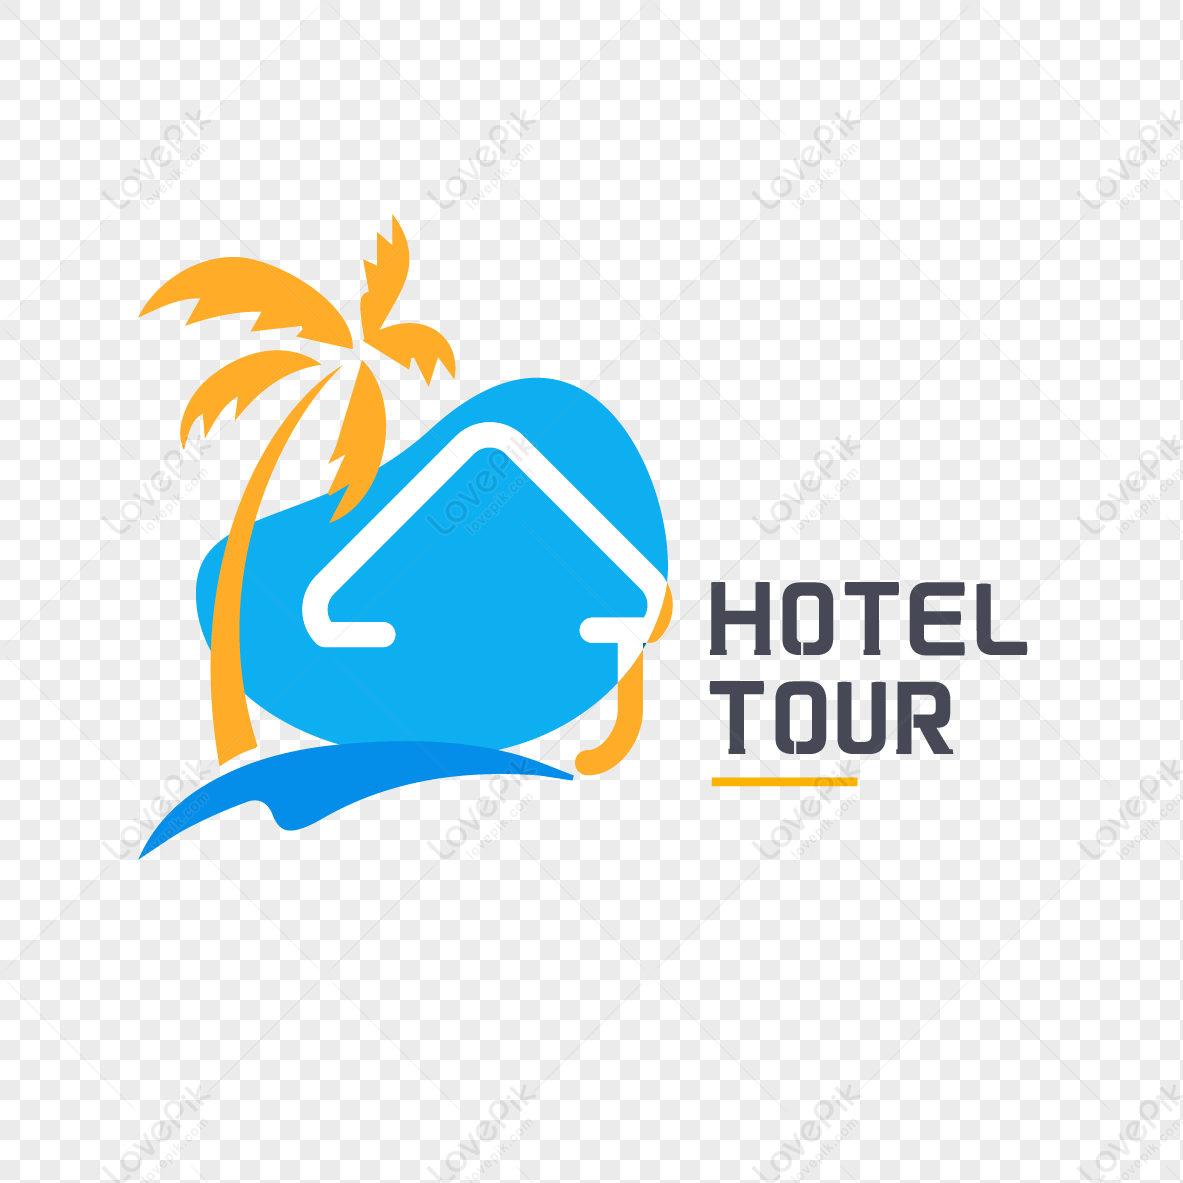 tour logo png